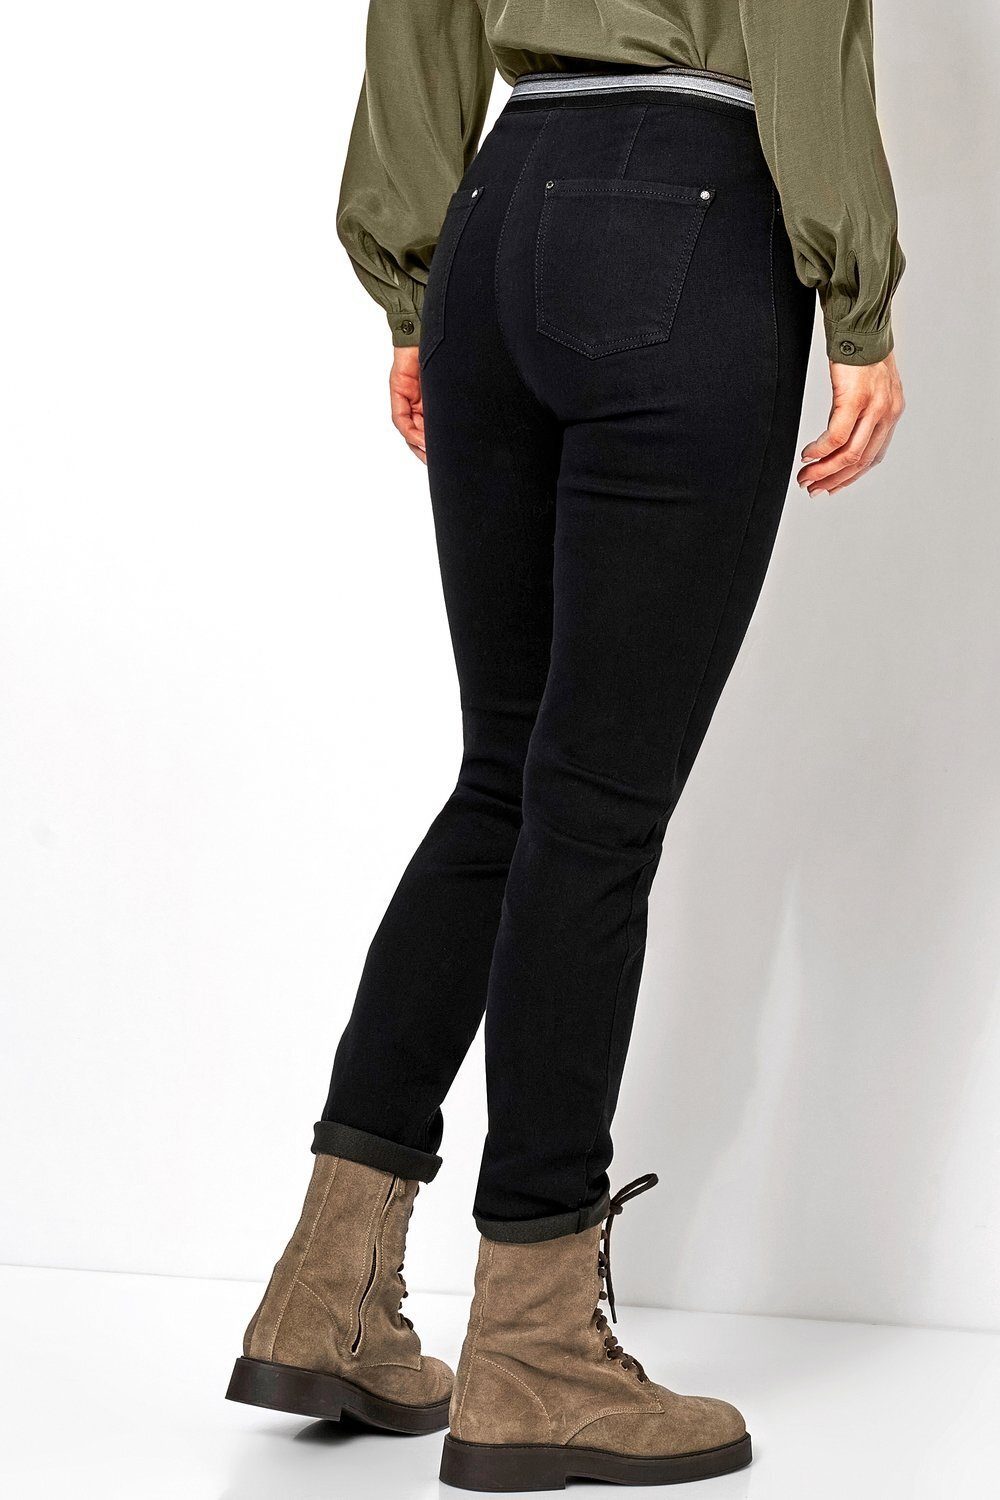 Gummizug Ankle-Jeans schwarz TONI gestreiftem - mit 089 Jenny